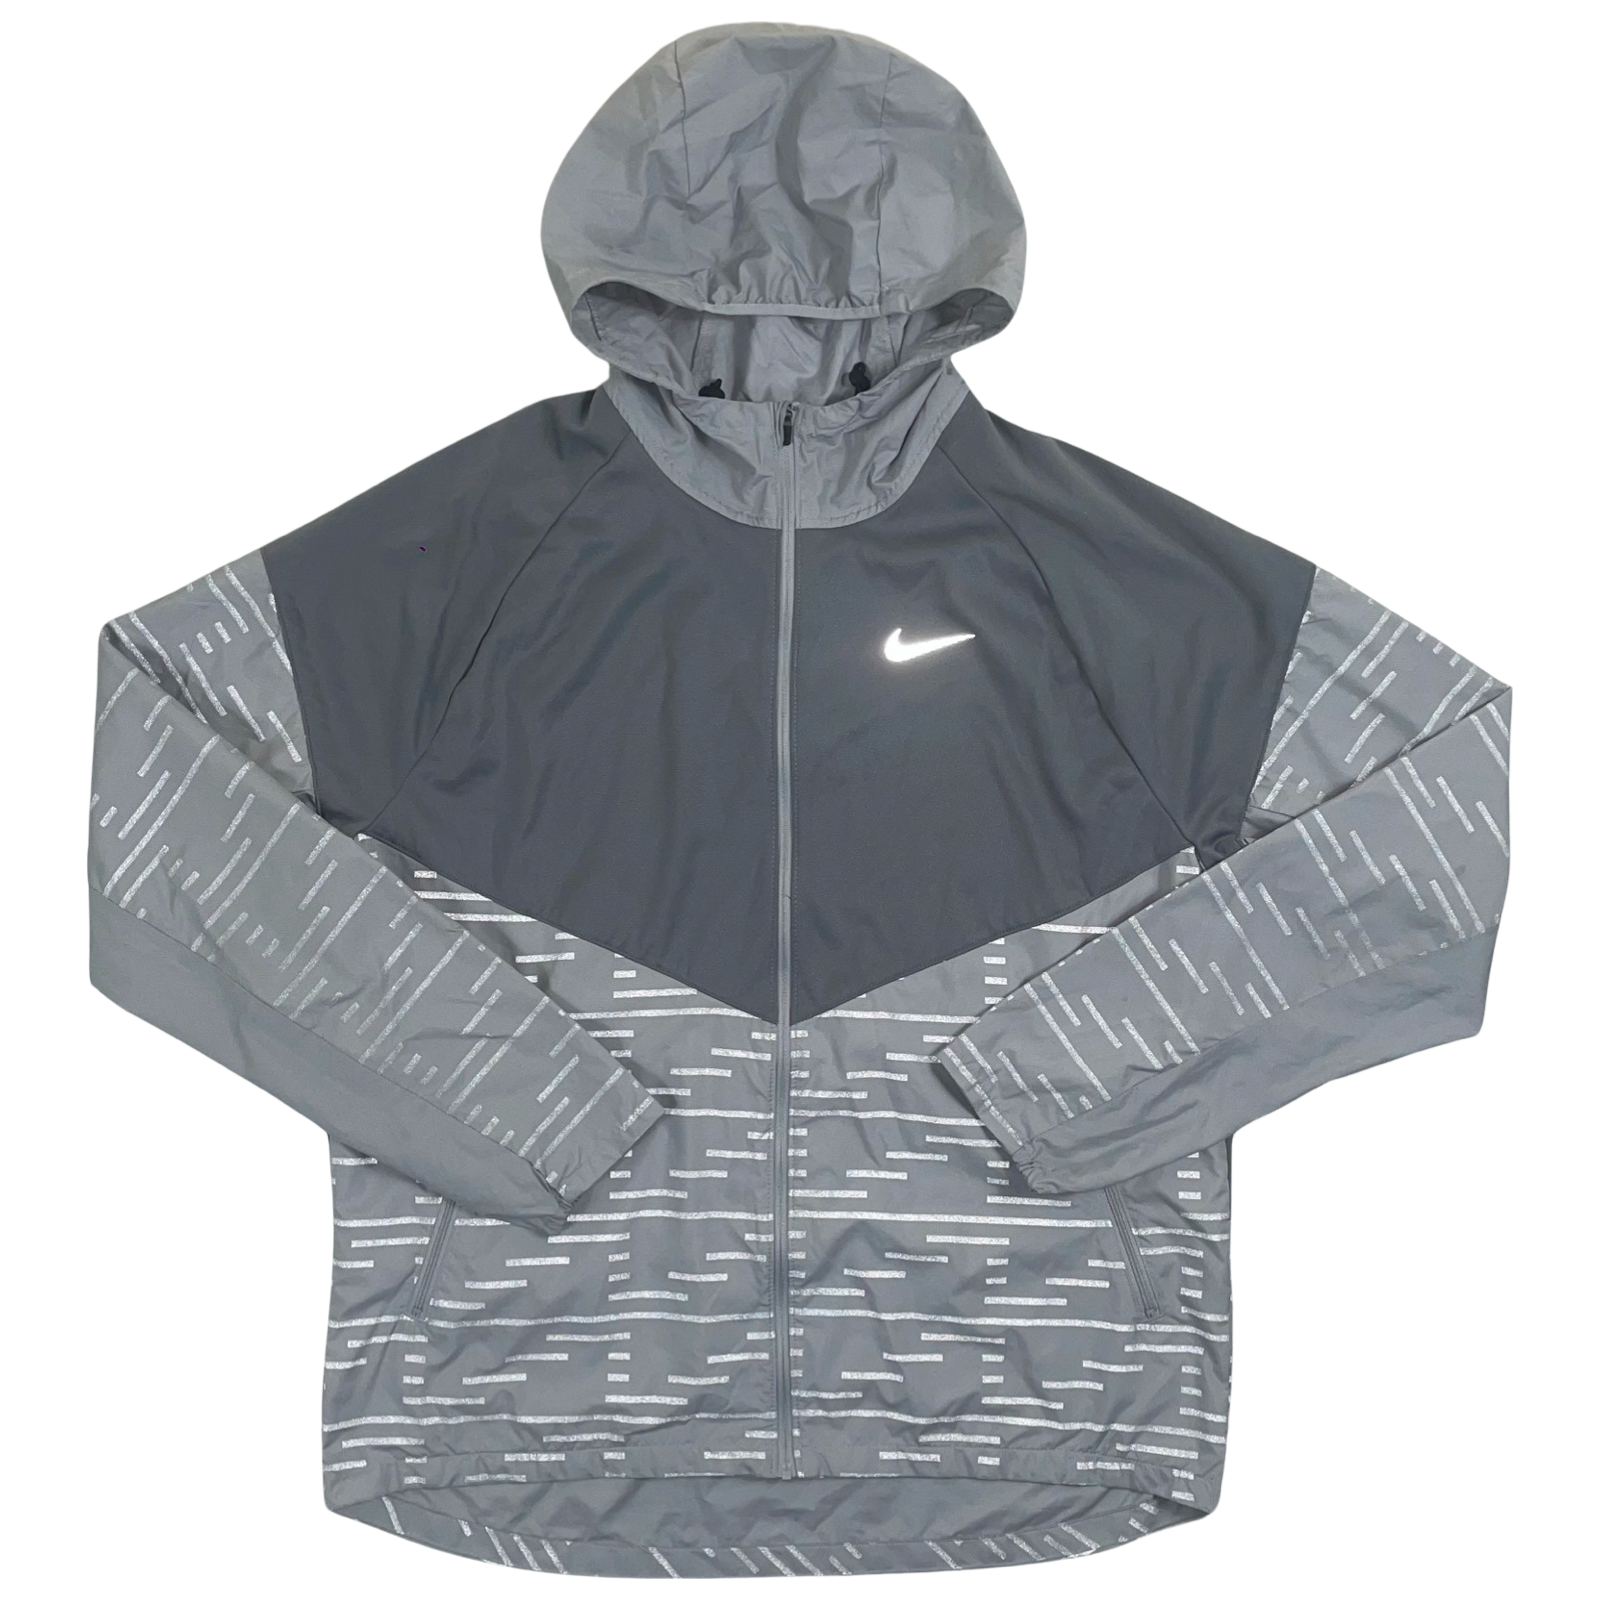 Rare Grey Nike Running Division Flash Jacket